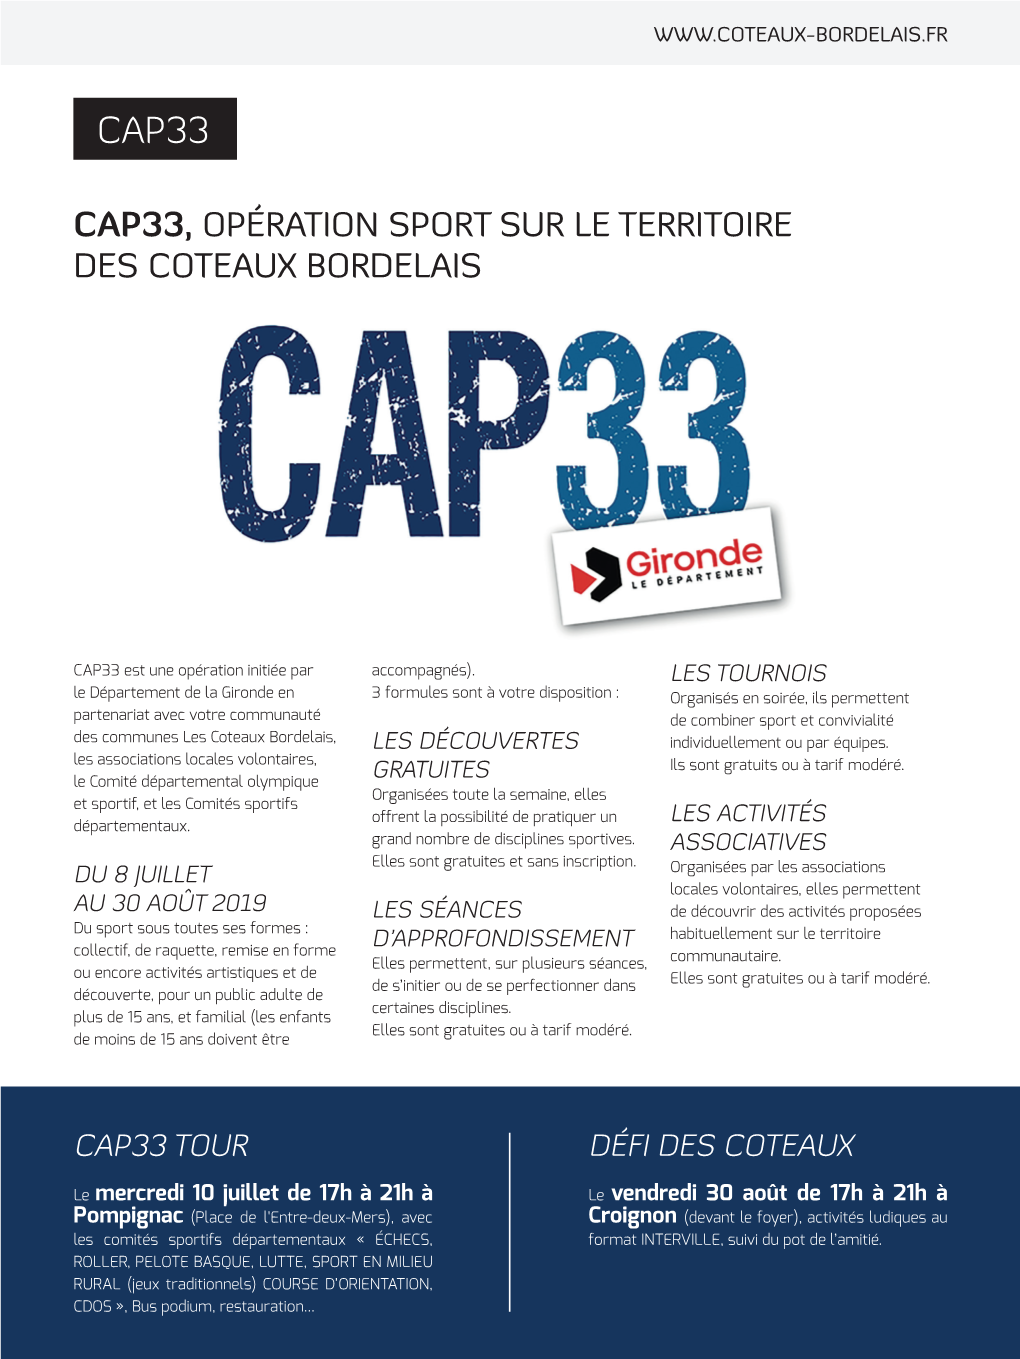 Cap33, Opération Sport Sur Le Territoire Des Coteaux Bordelais